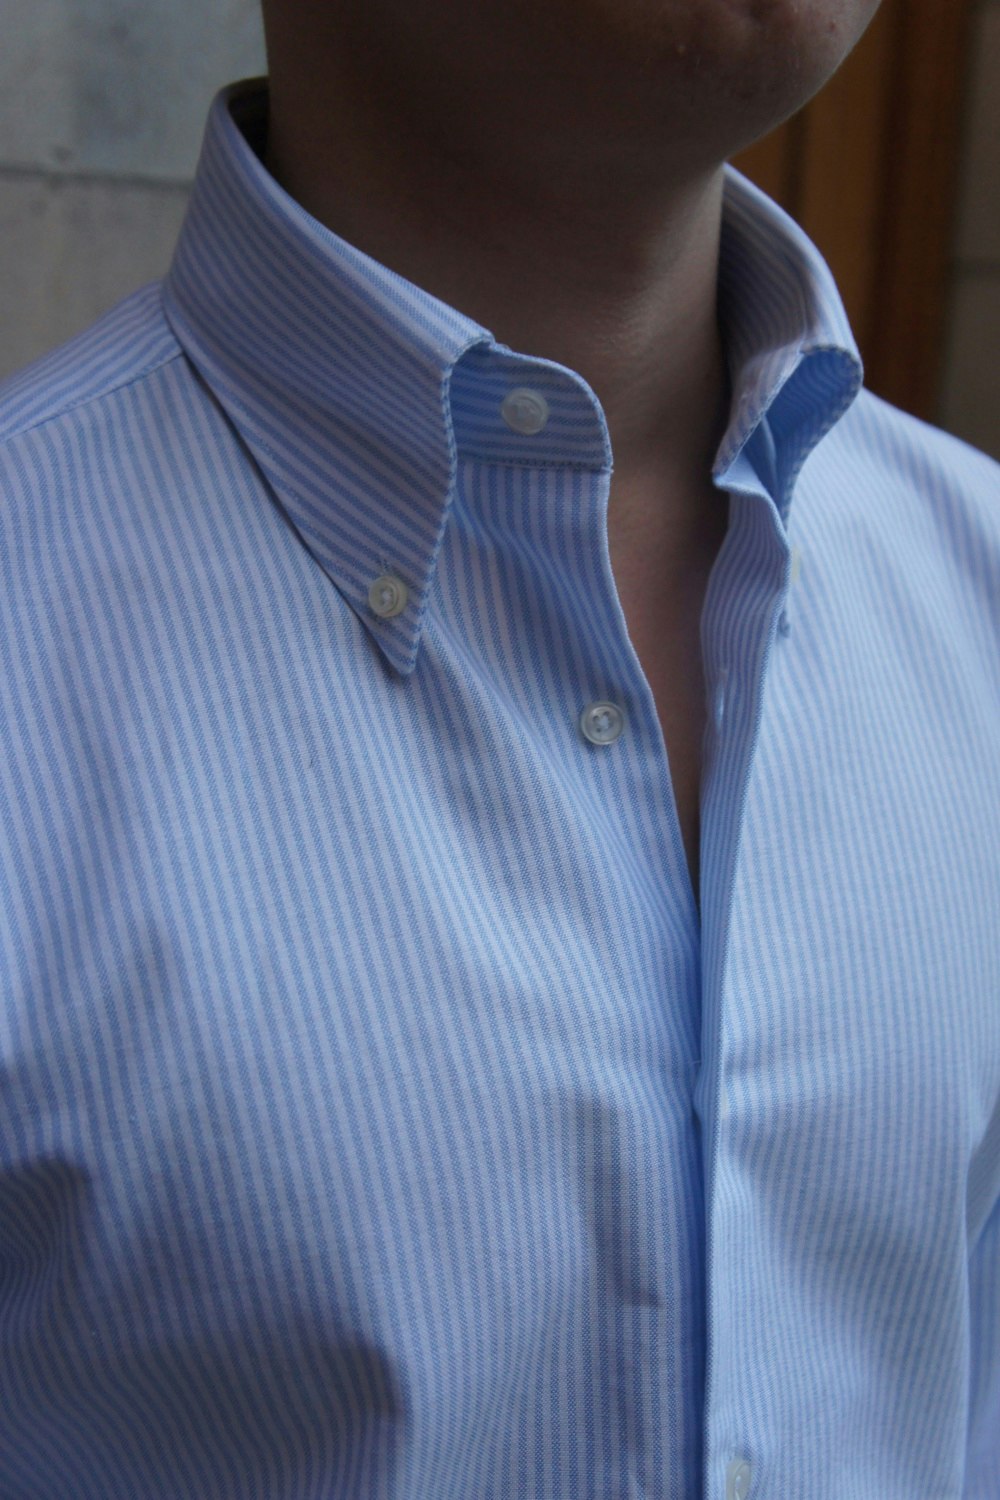 University Stripe Oxford Button Down Shirt - Light Blue/White